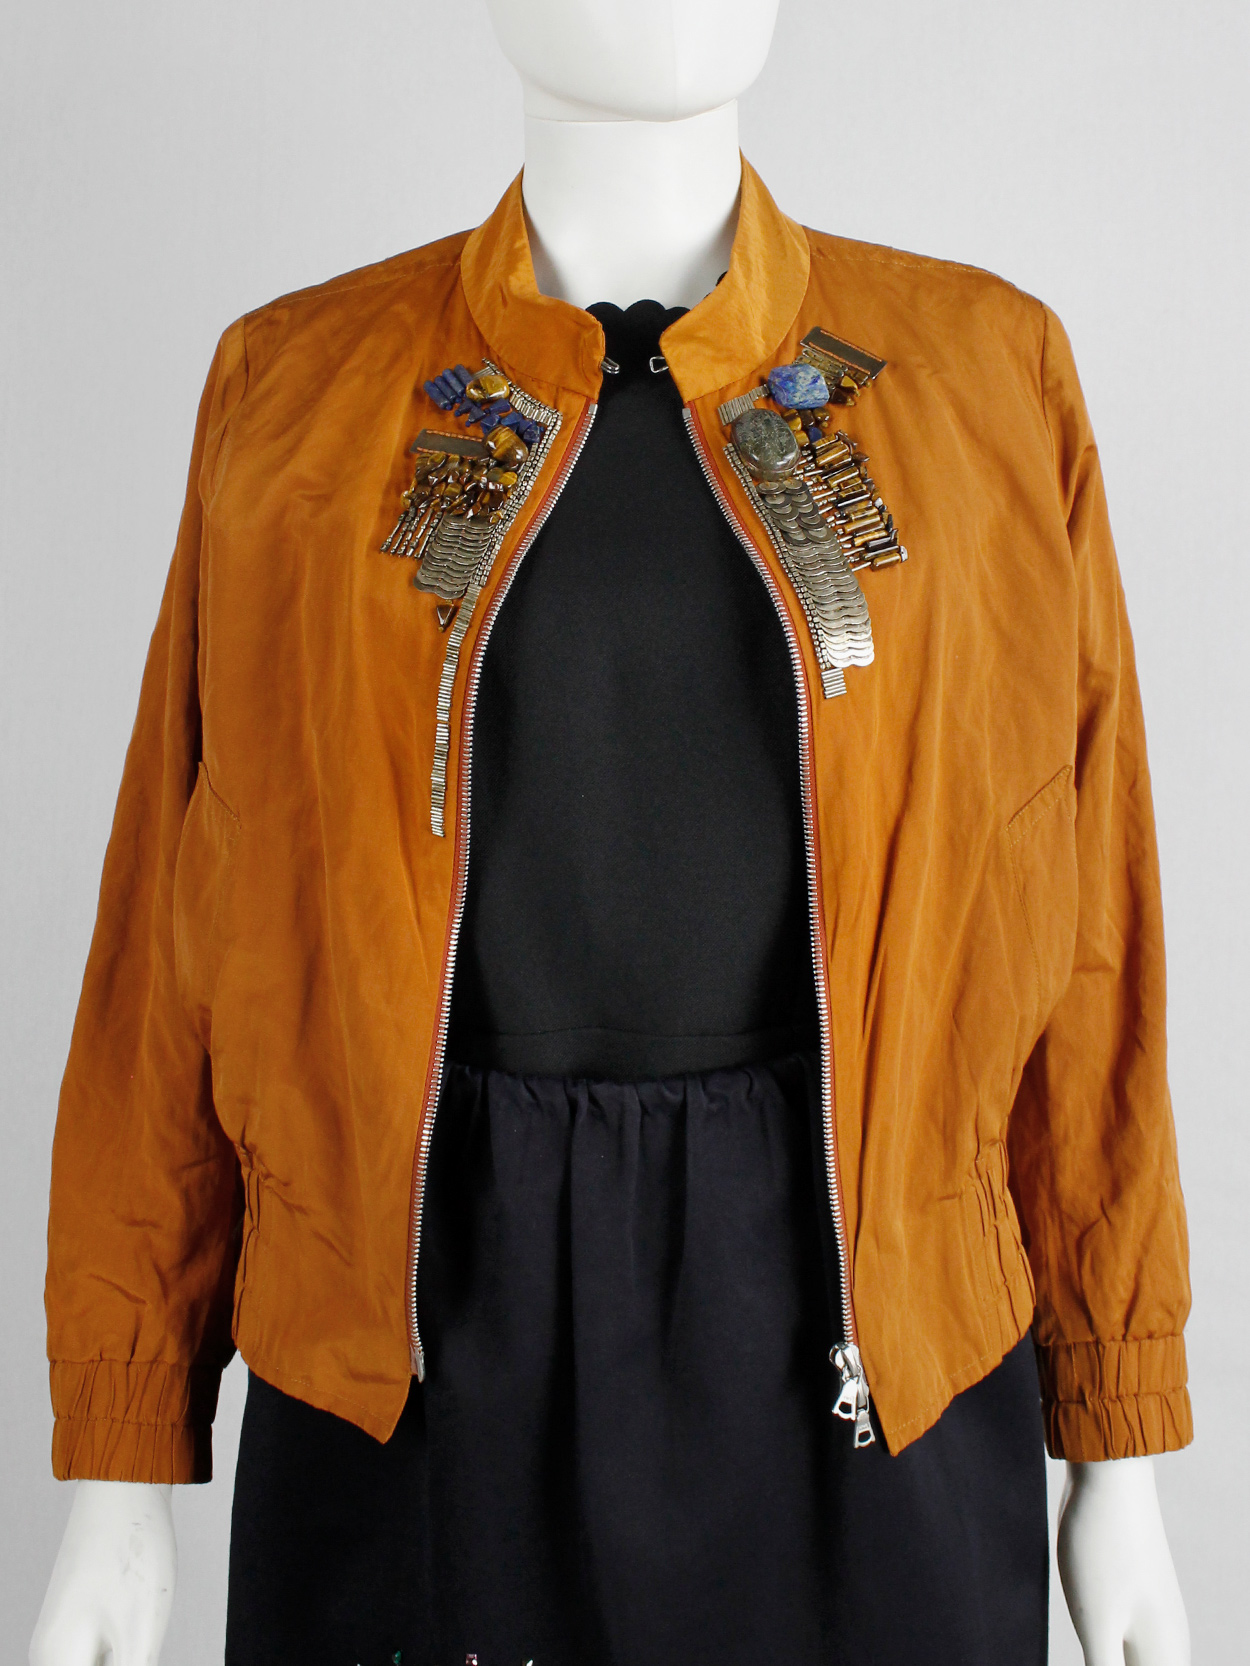 Dries Van Noten orange bomber jacket with gemstones and metal plating ...